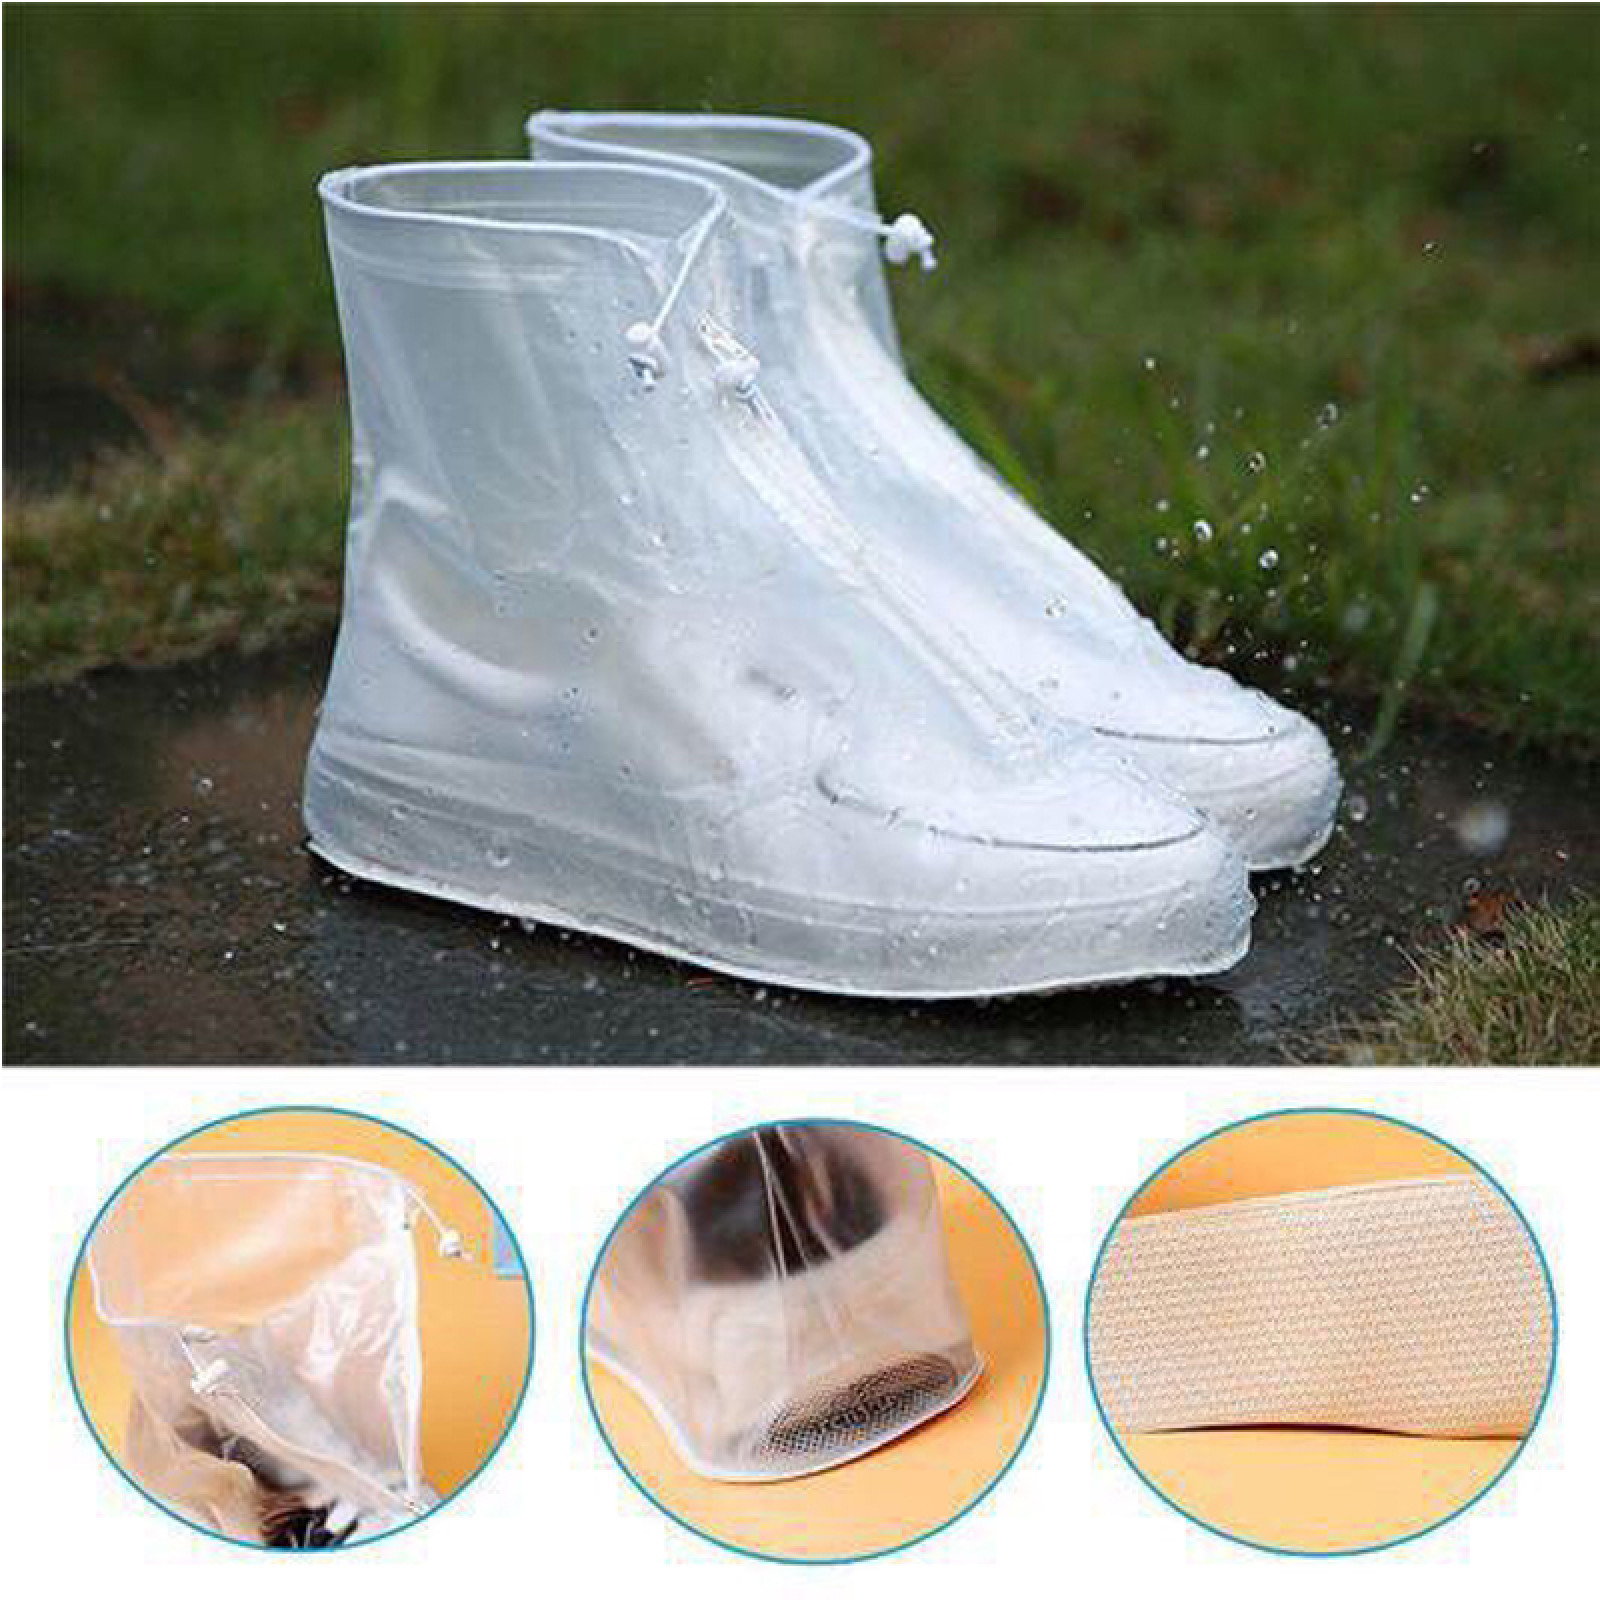 Дождевики для обуви, бахилы от дождя, чехлы для обуви Белые Размер L 154066